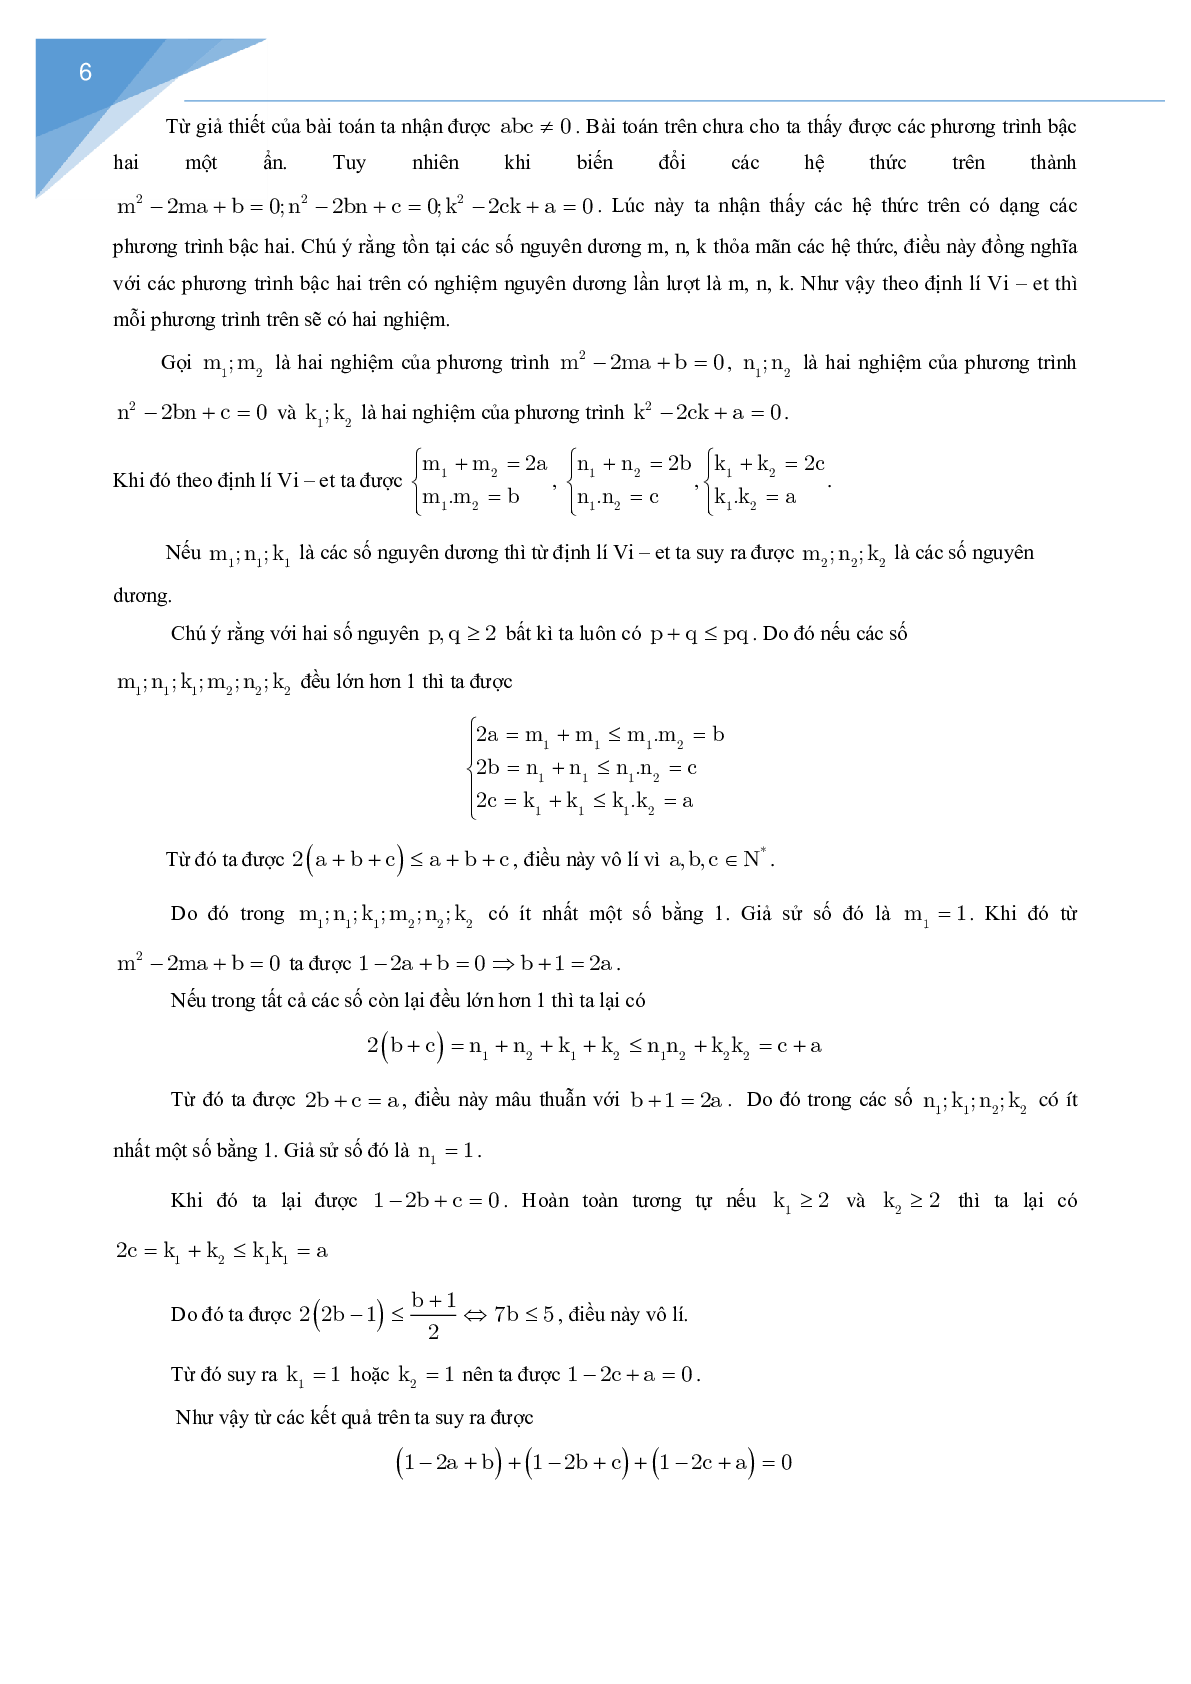 Vận dụng định lý Vi-et giải một số bài toán số học (trang 6)